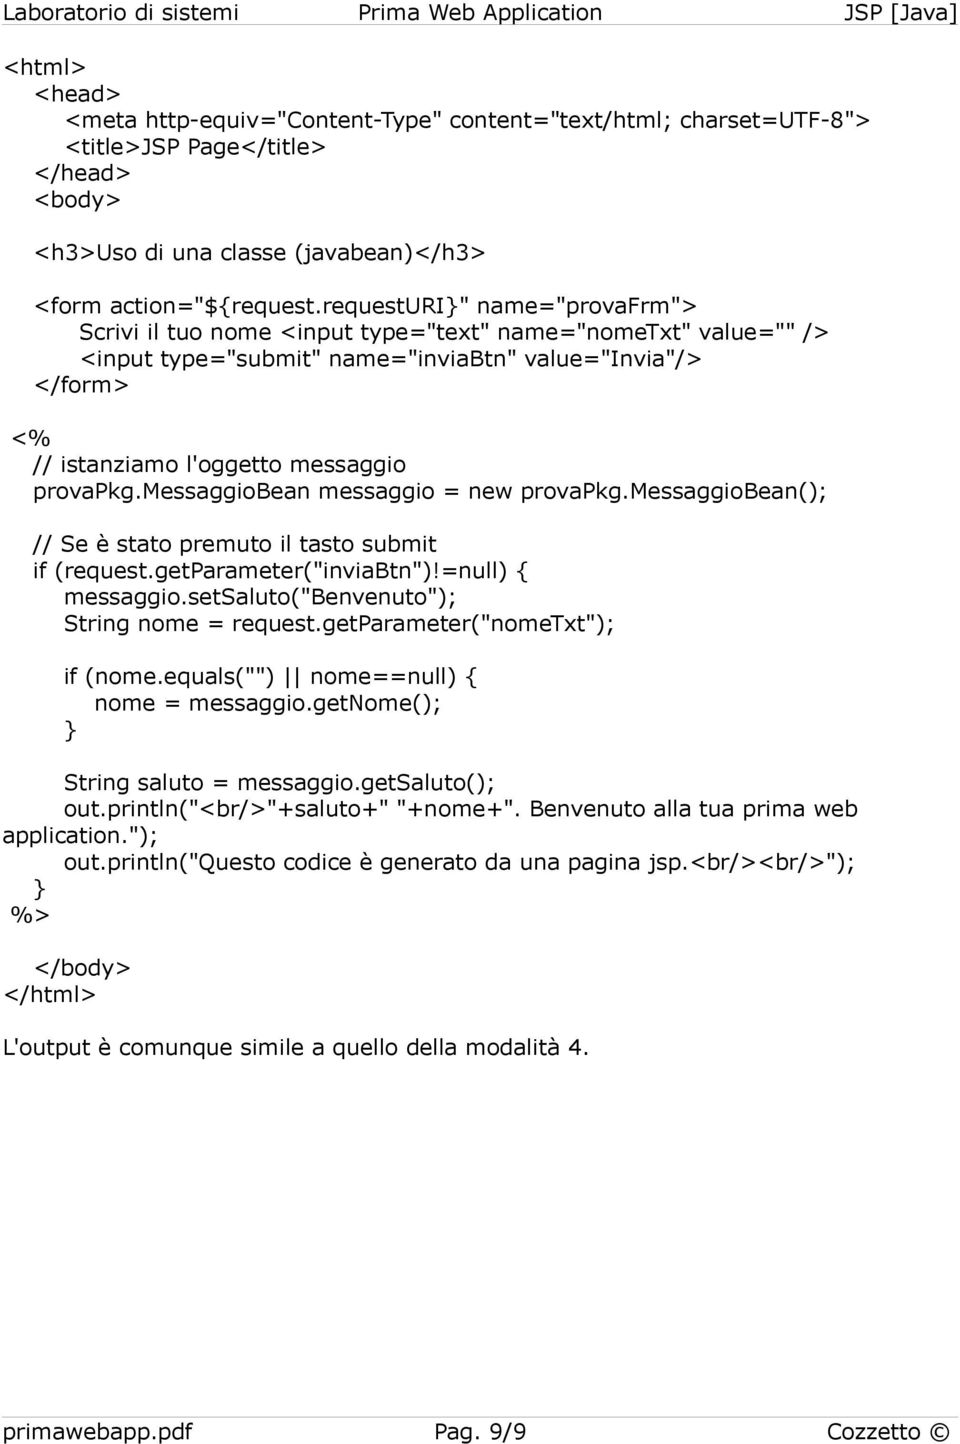 messaggiobean messaggio = new provapkg.messaggiobean(); // Se è stato premuto il tasto submit if (request.getparameter("inviabtn")!=null) { messaggio.setsaluto("benvenuto"); String nome = request.